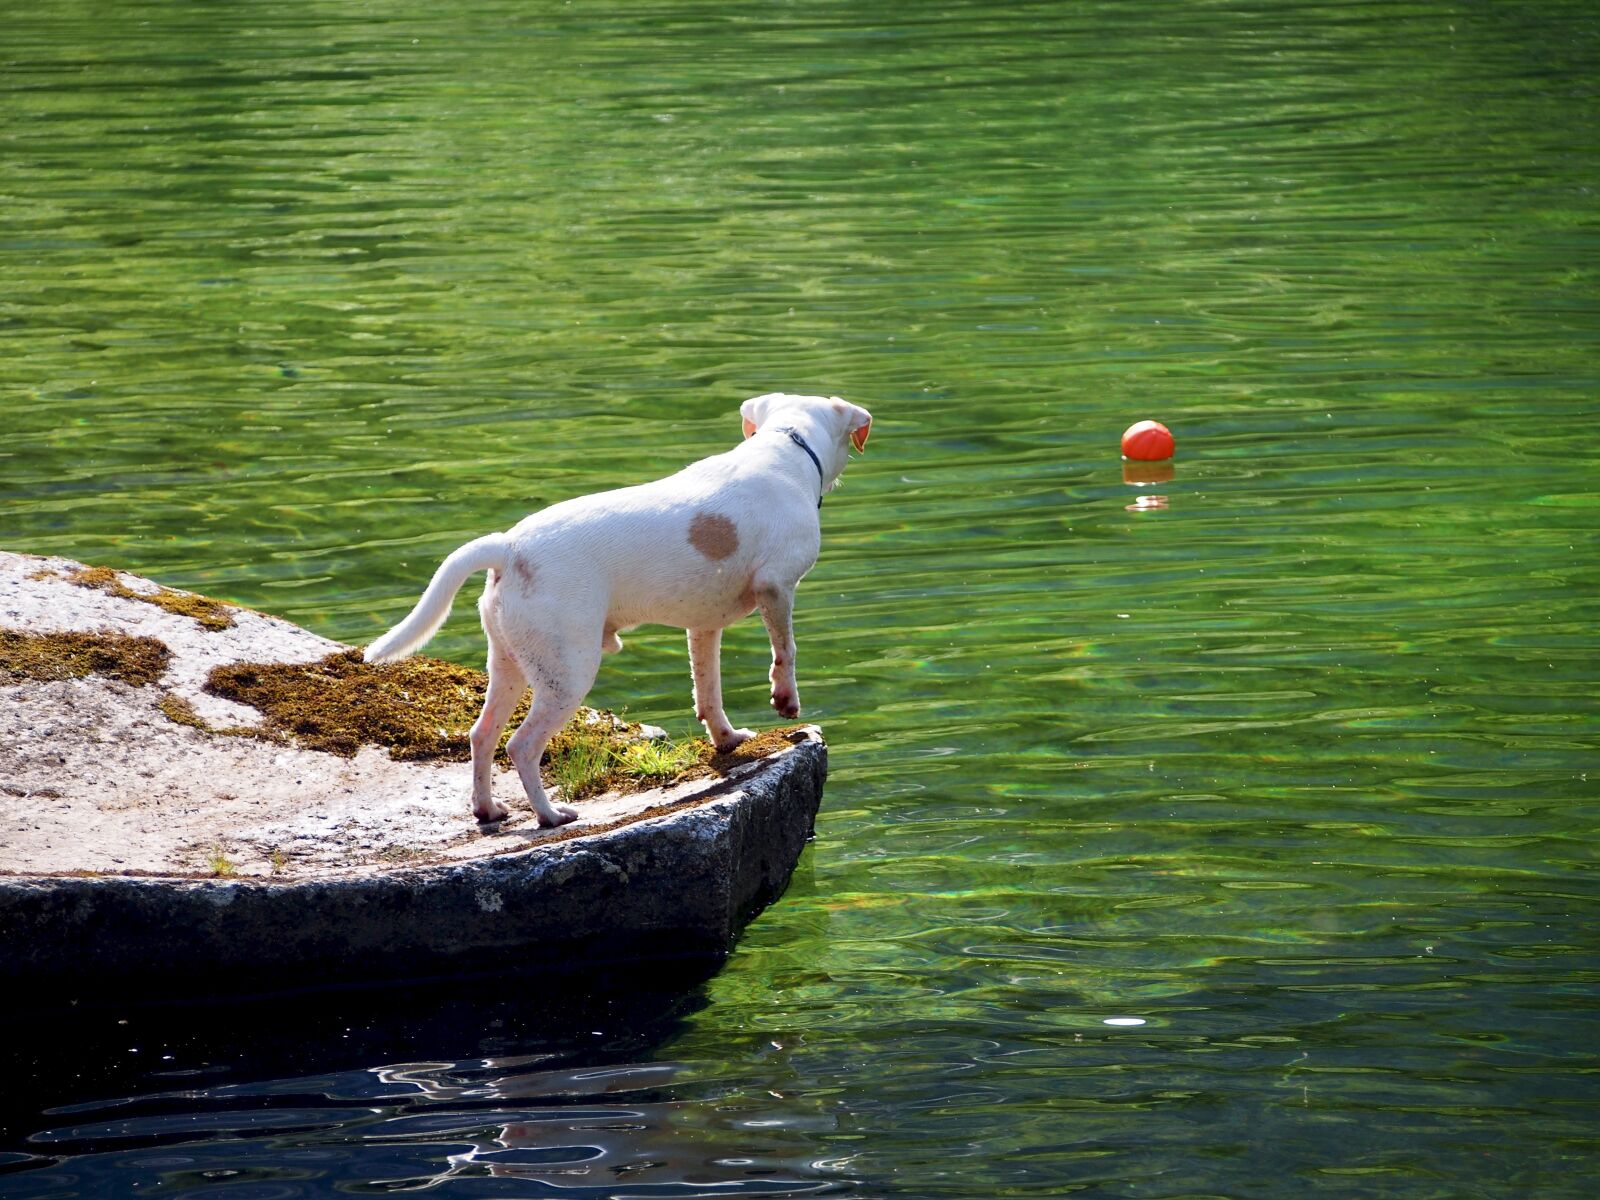 Olympus PEN E-P5 + Olympus M.Zuiko Digital ED 40-150mm F4-5.6 sample photo. Dog, white dog, dog photography